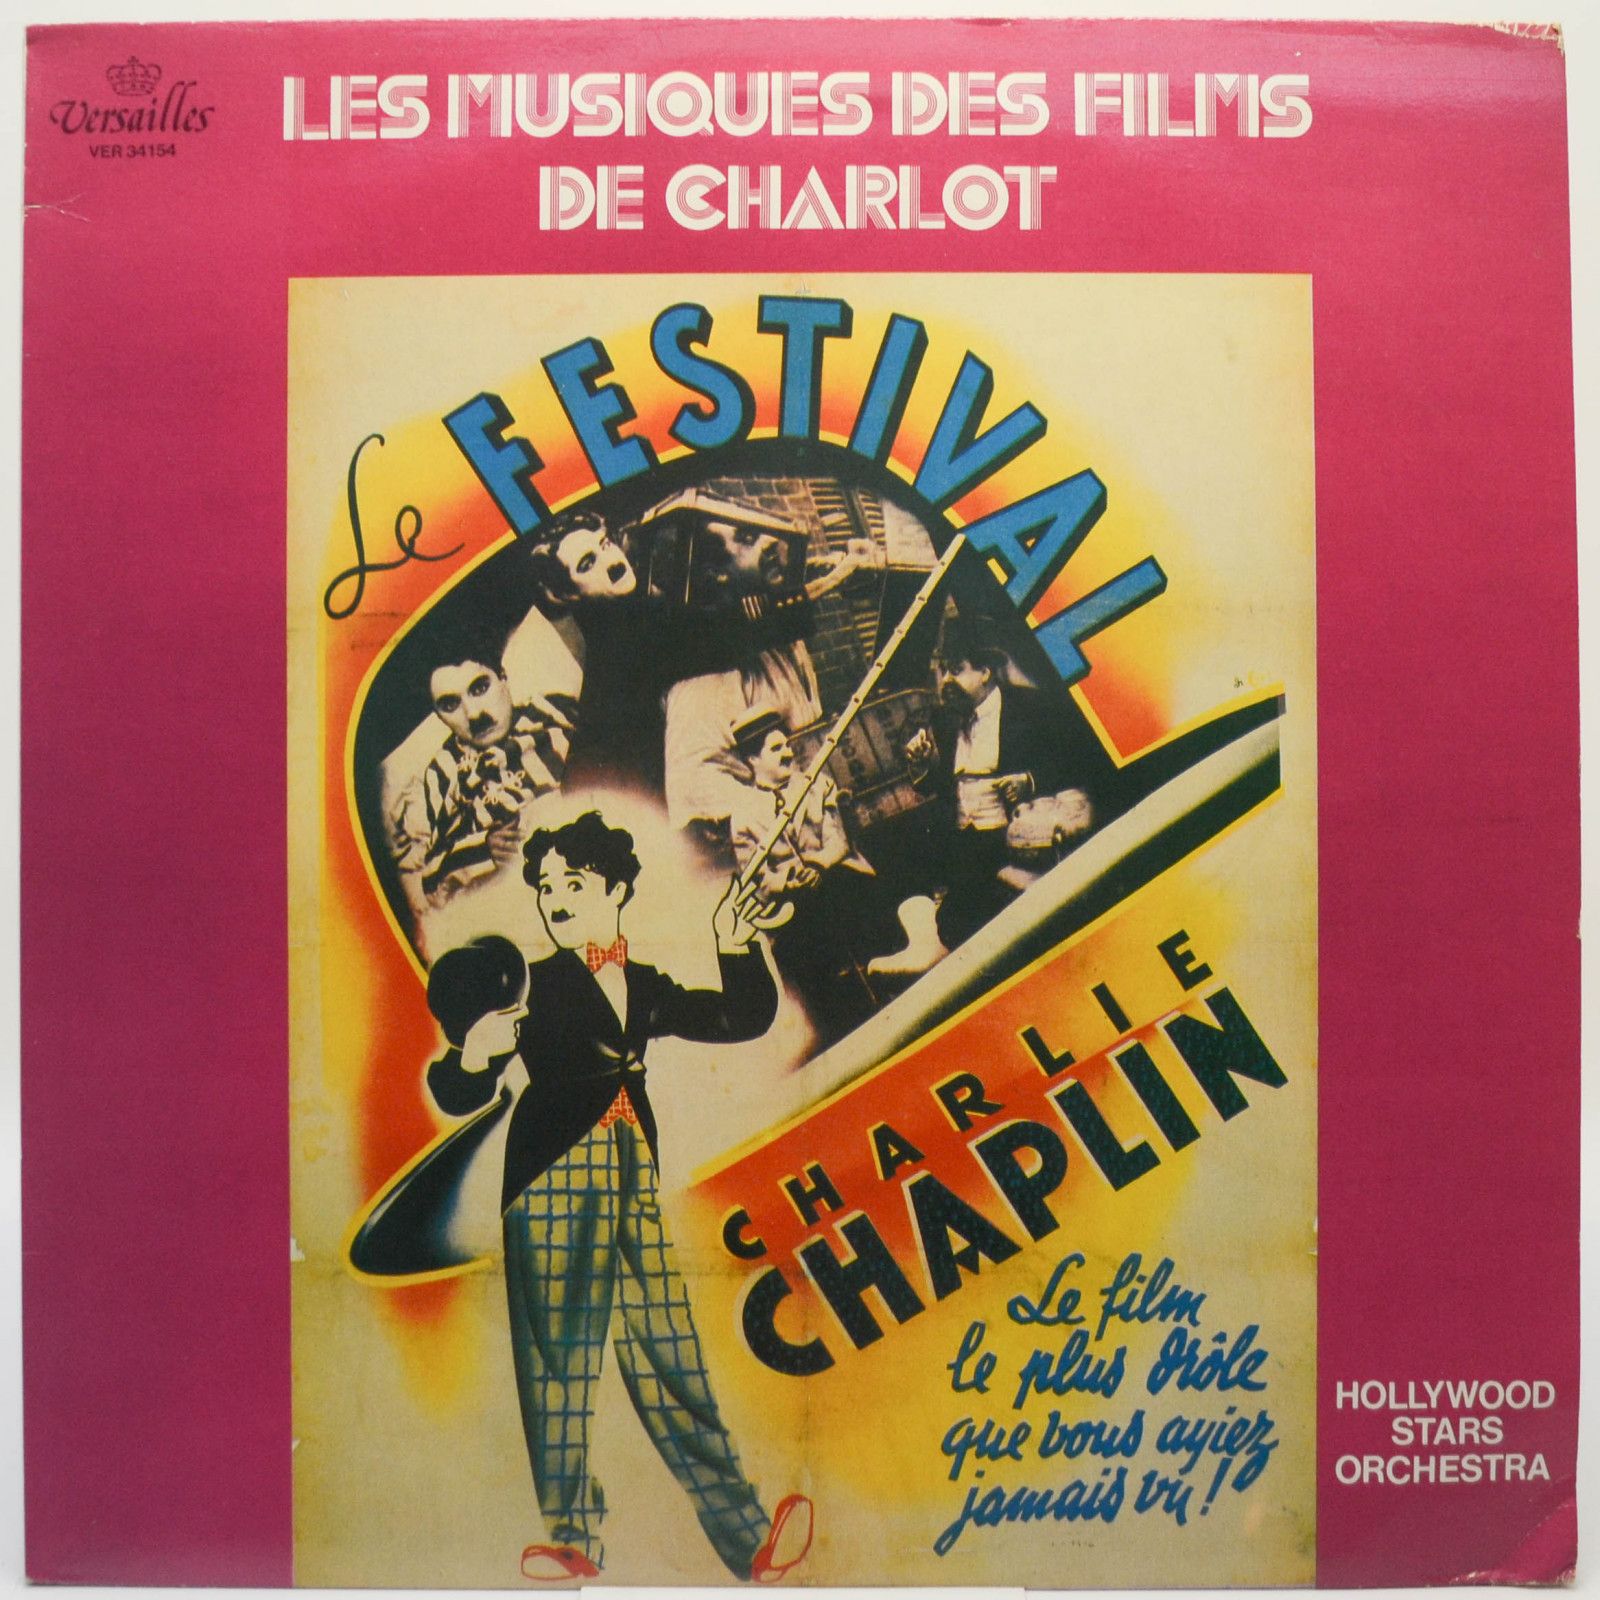 Charlie Chaplin — Les Musiques Des Films De Charlot, 1978